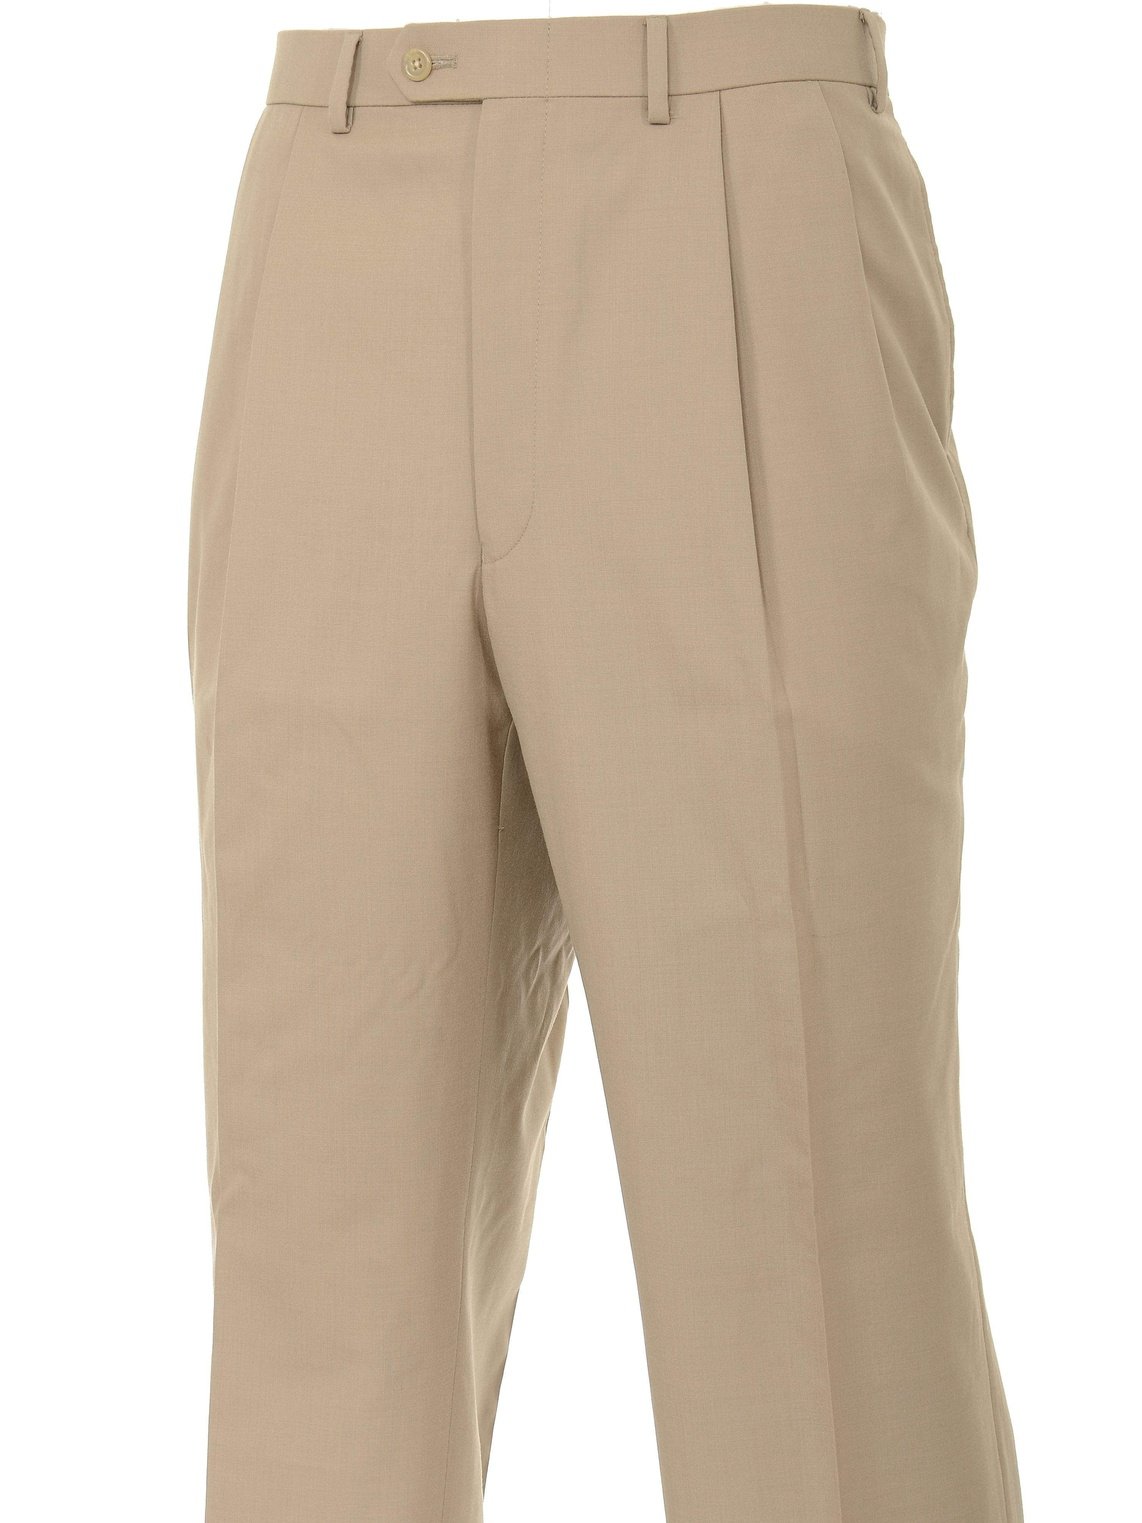 Ralph Lauren PANTS Ralph Lauren Classic Fit Solid Taupe Tan Pleated Washable Dress Pants